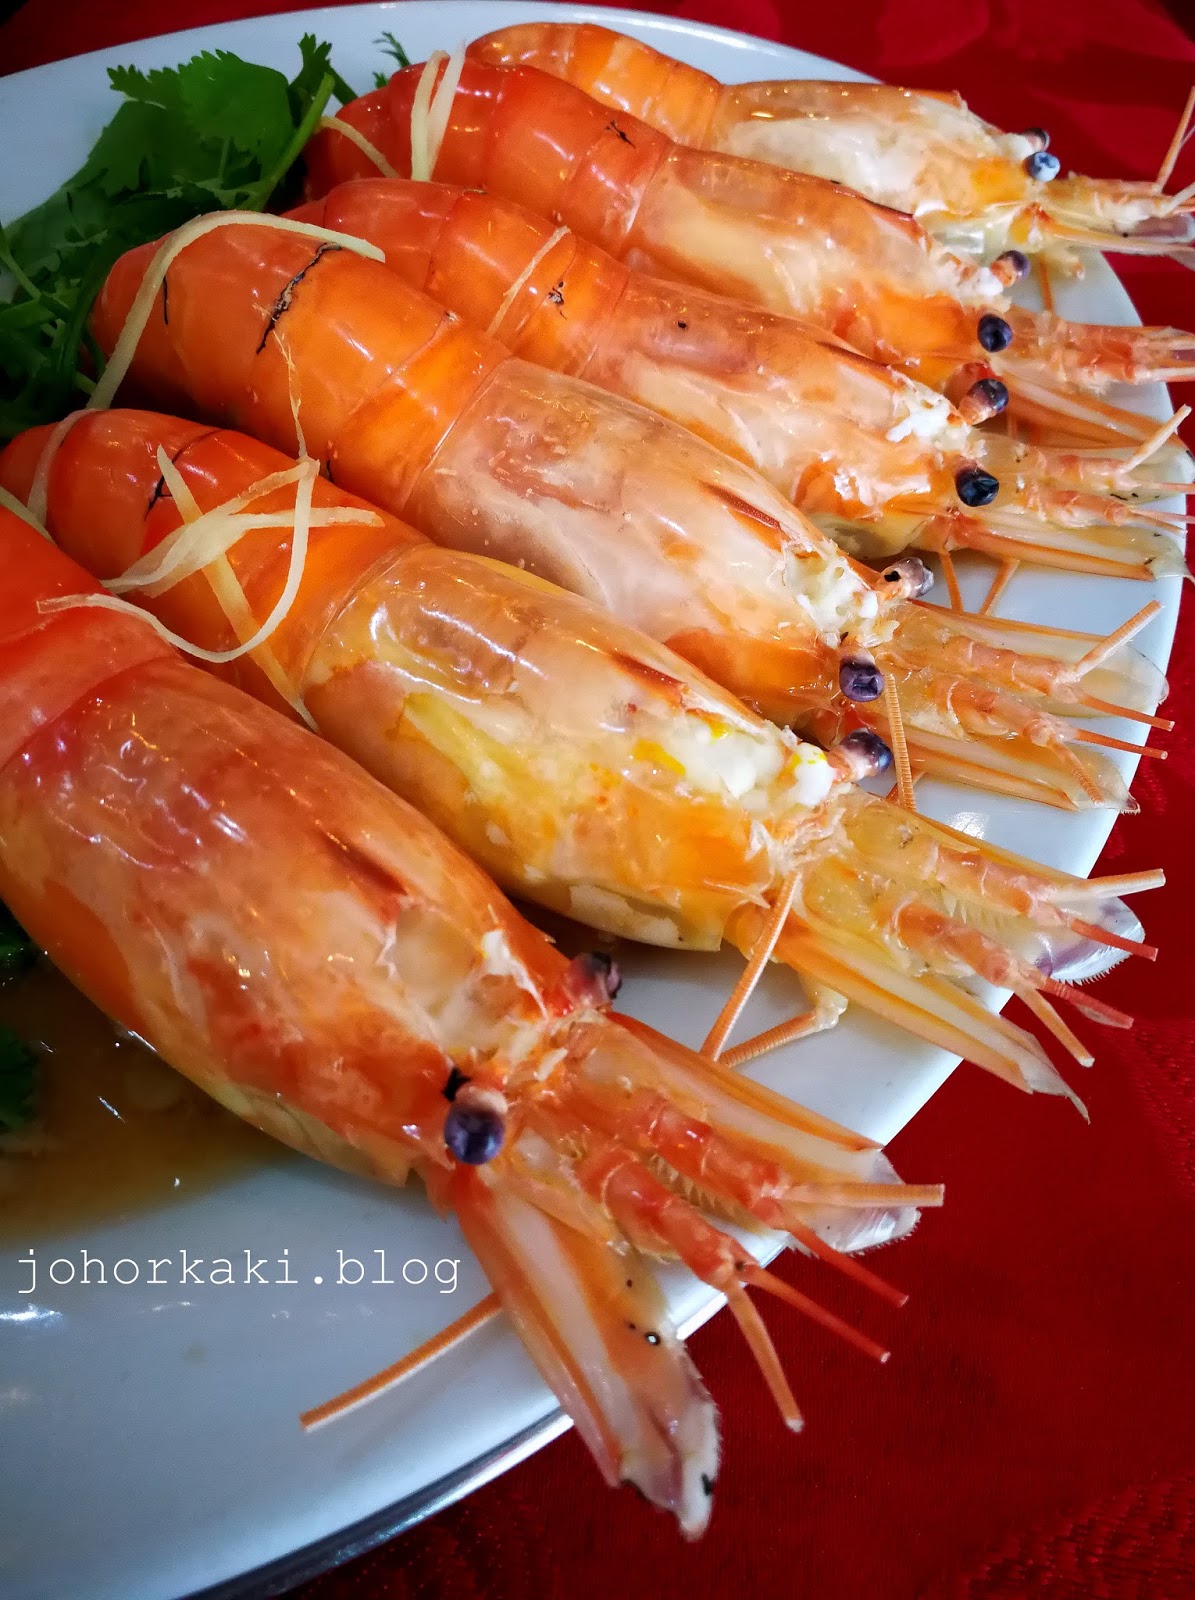 Tualang seafood